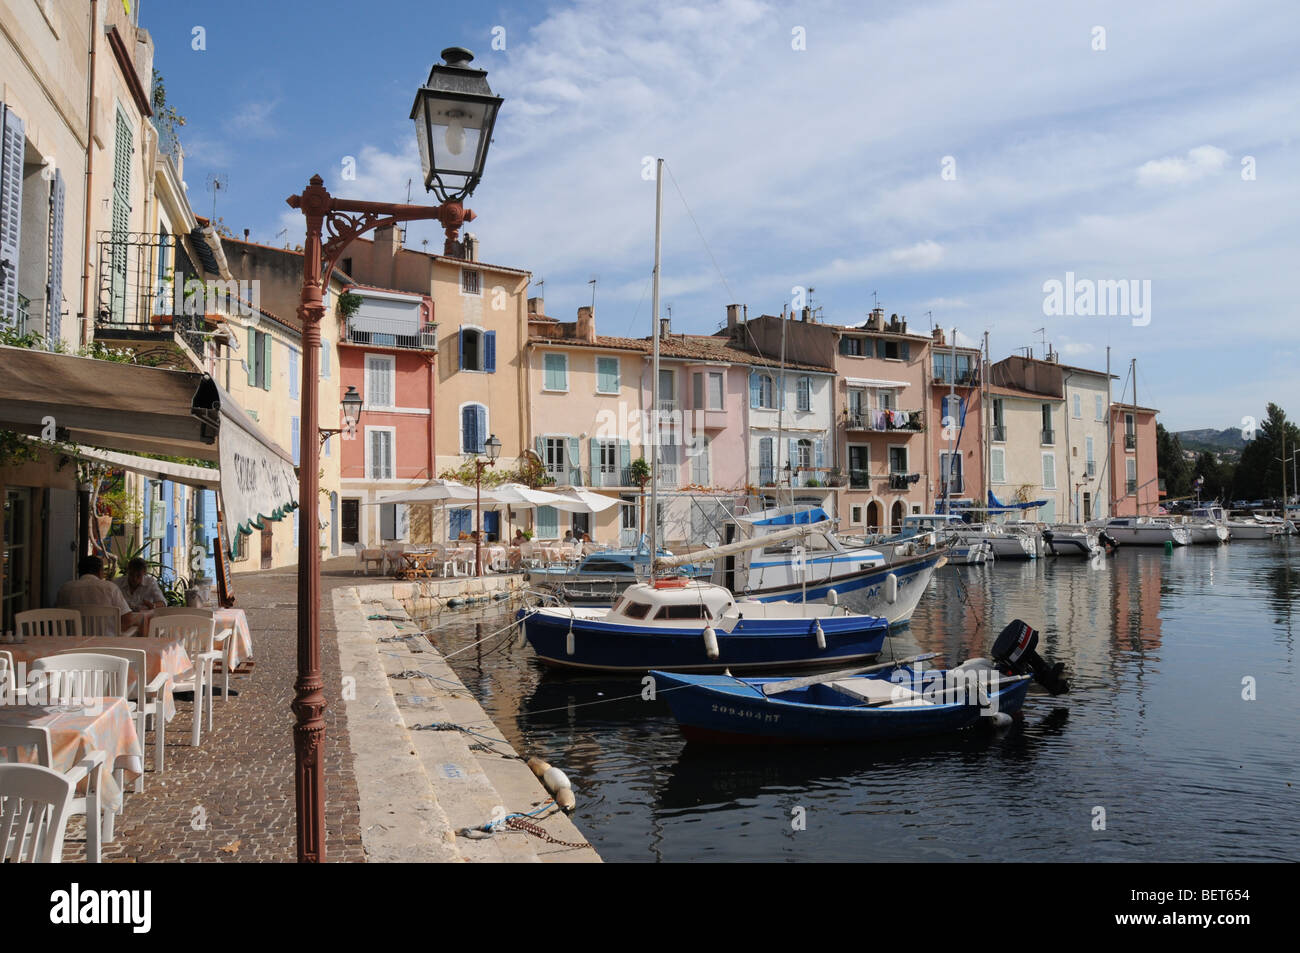 Le quai et port de "petite Venise" la Venise Provençale, sur la commune de Martigues dans le sud de la France. Banque D'Images